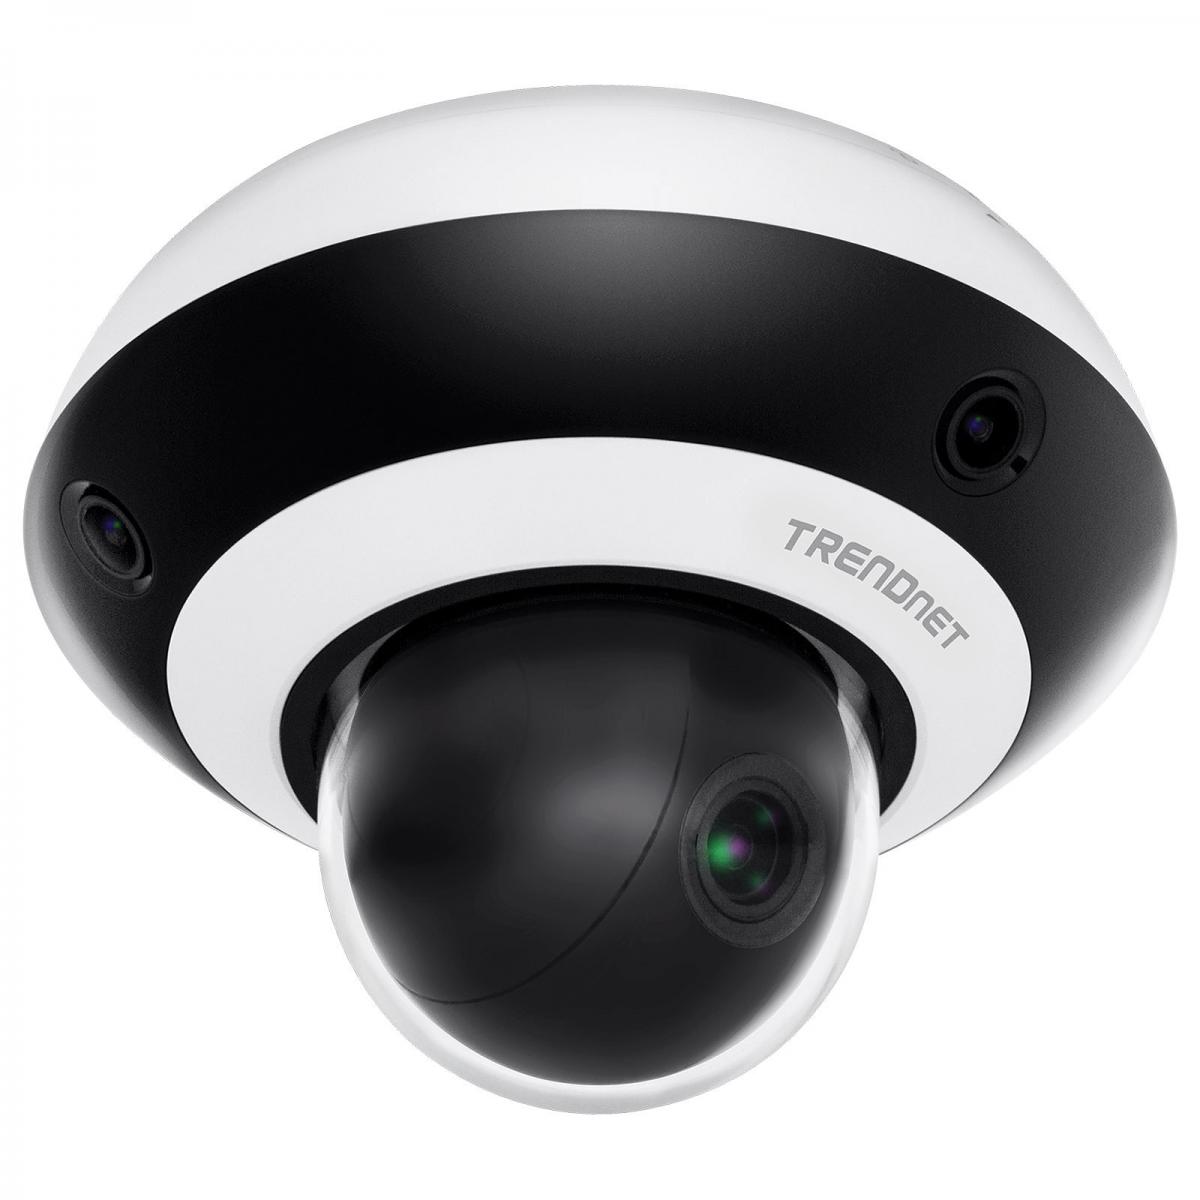 Trendnet - TRENDNET TV-IP460PI - Caméra de surveillance connectée